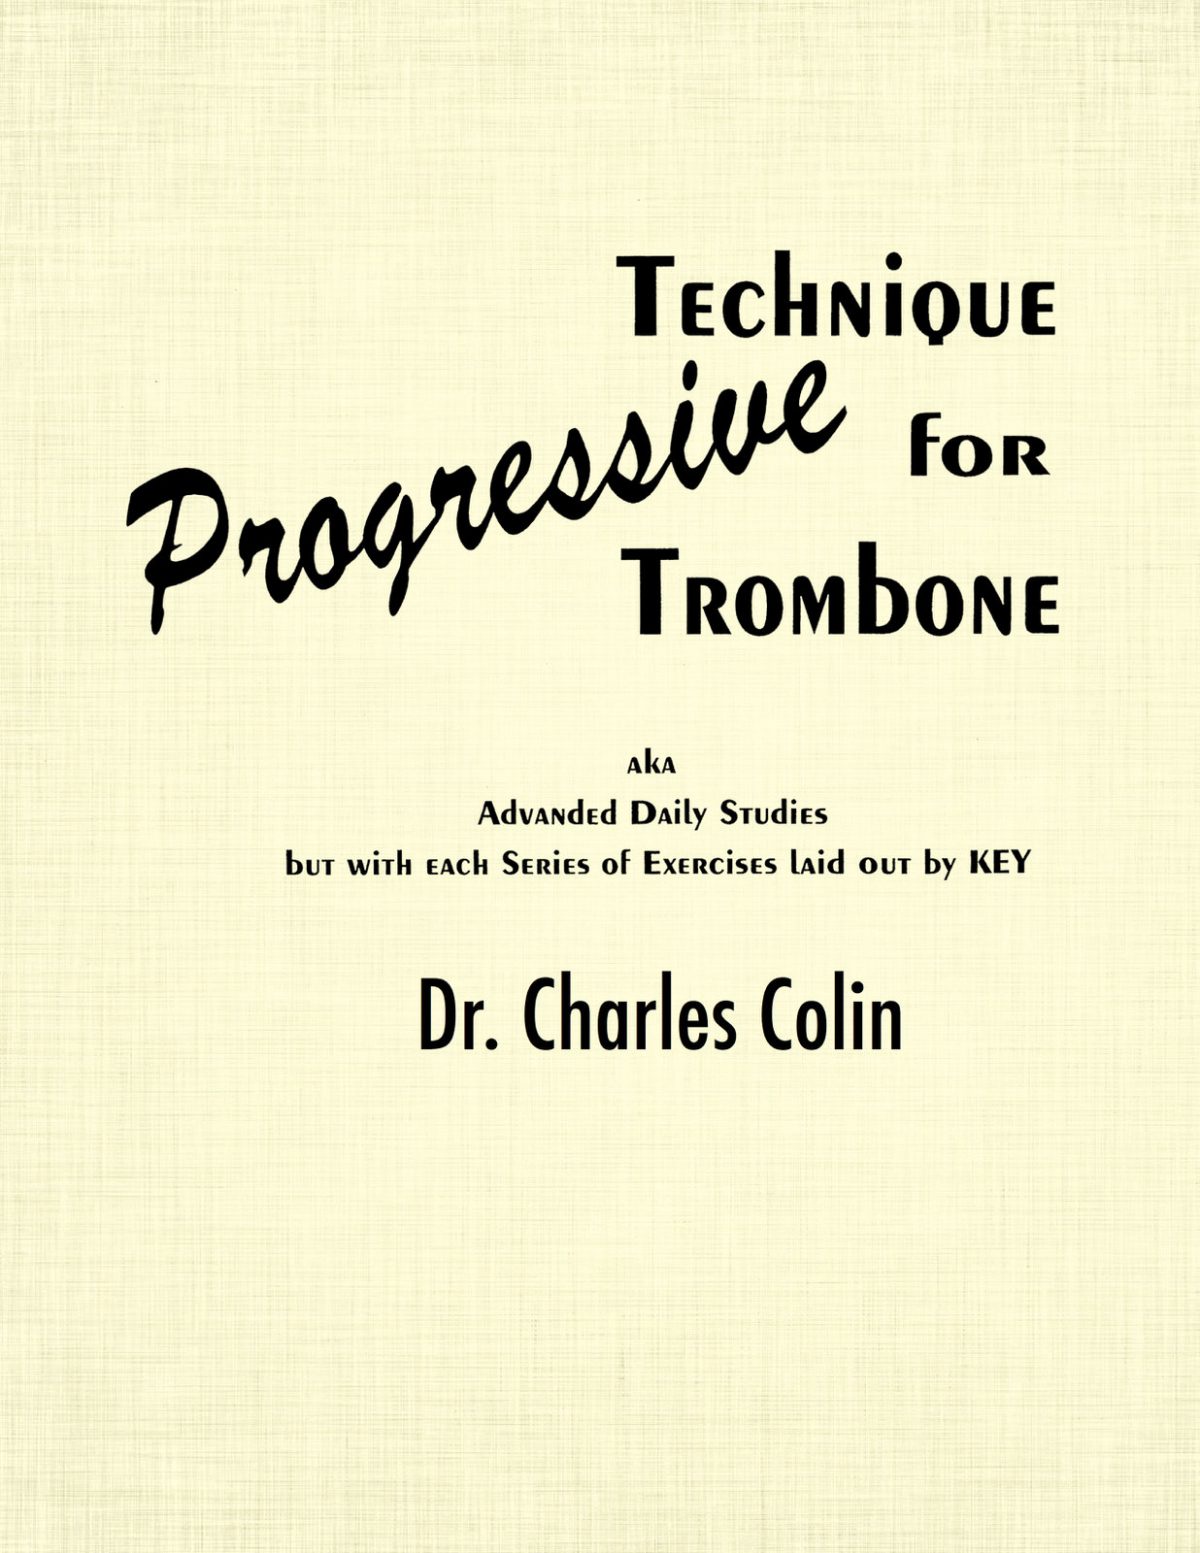 Progressive Technique for Trombone